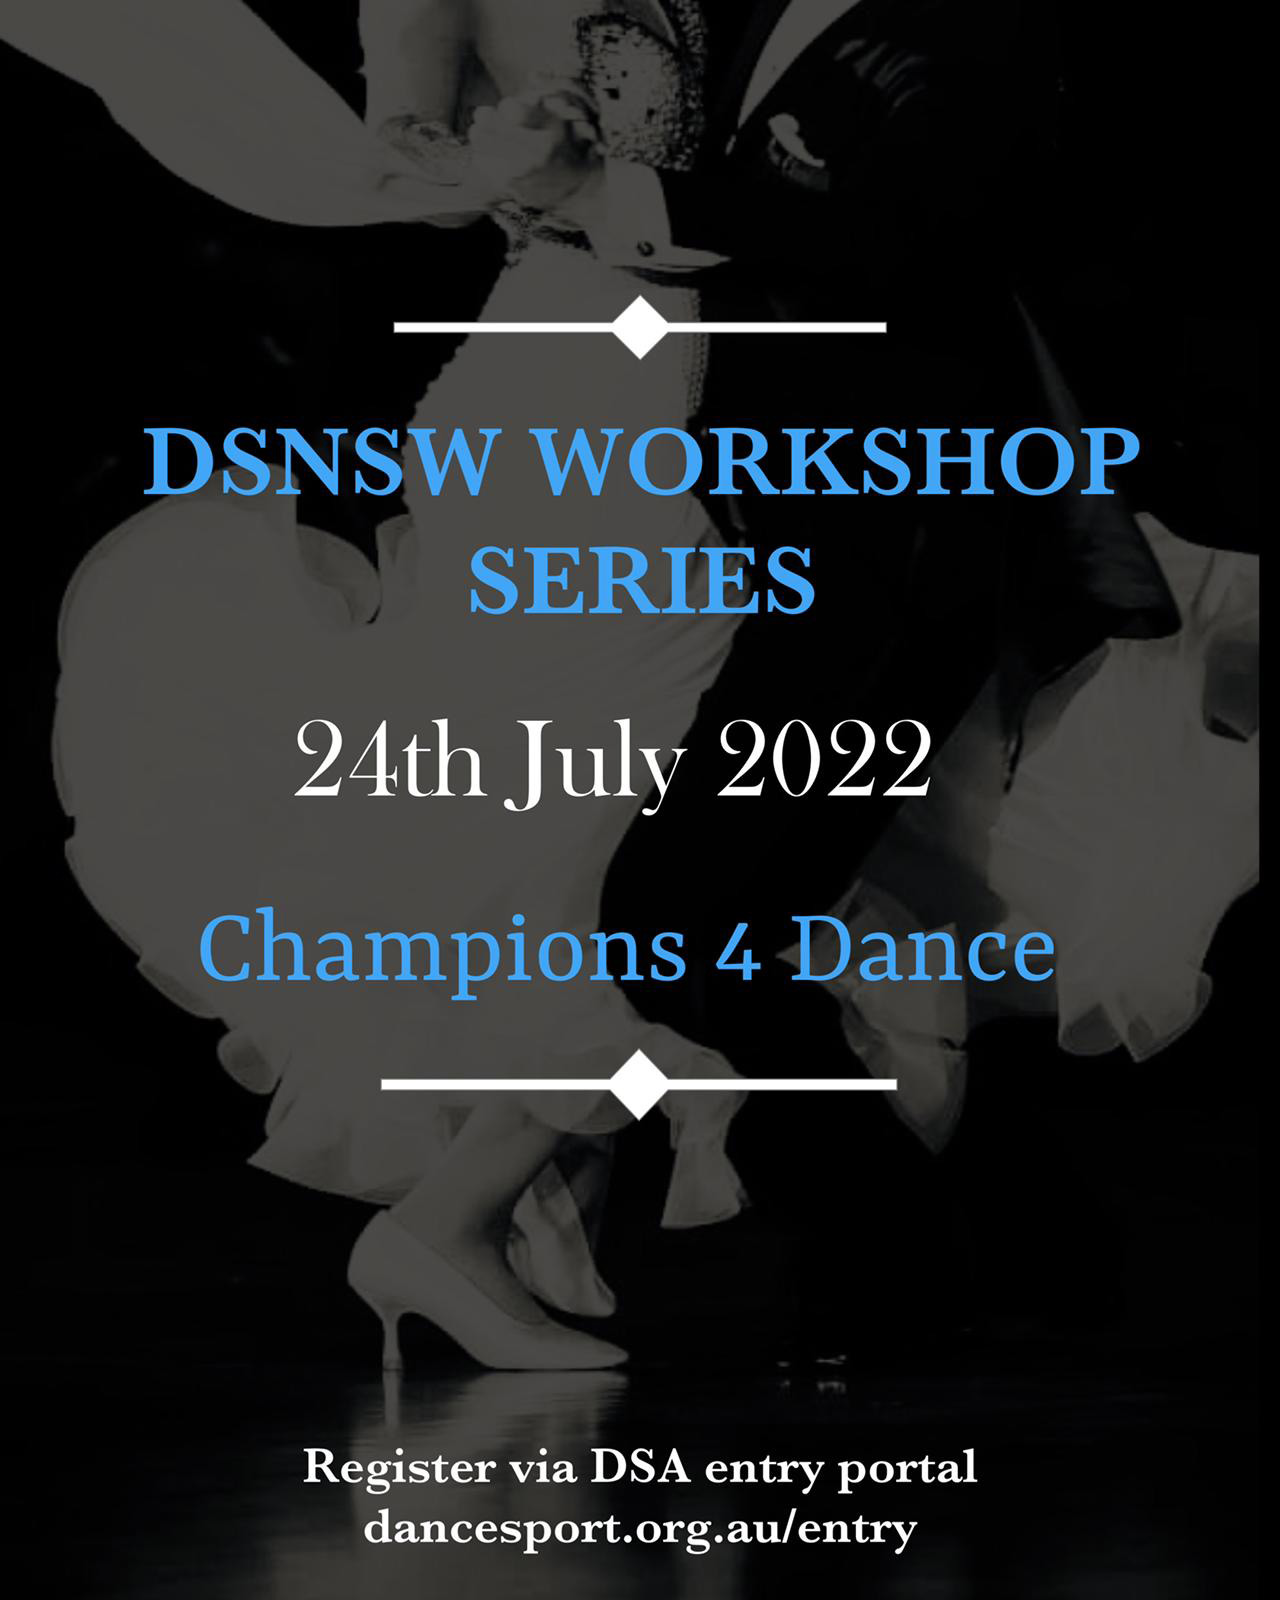 DSNSW Workshop Series Schedule invite